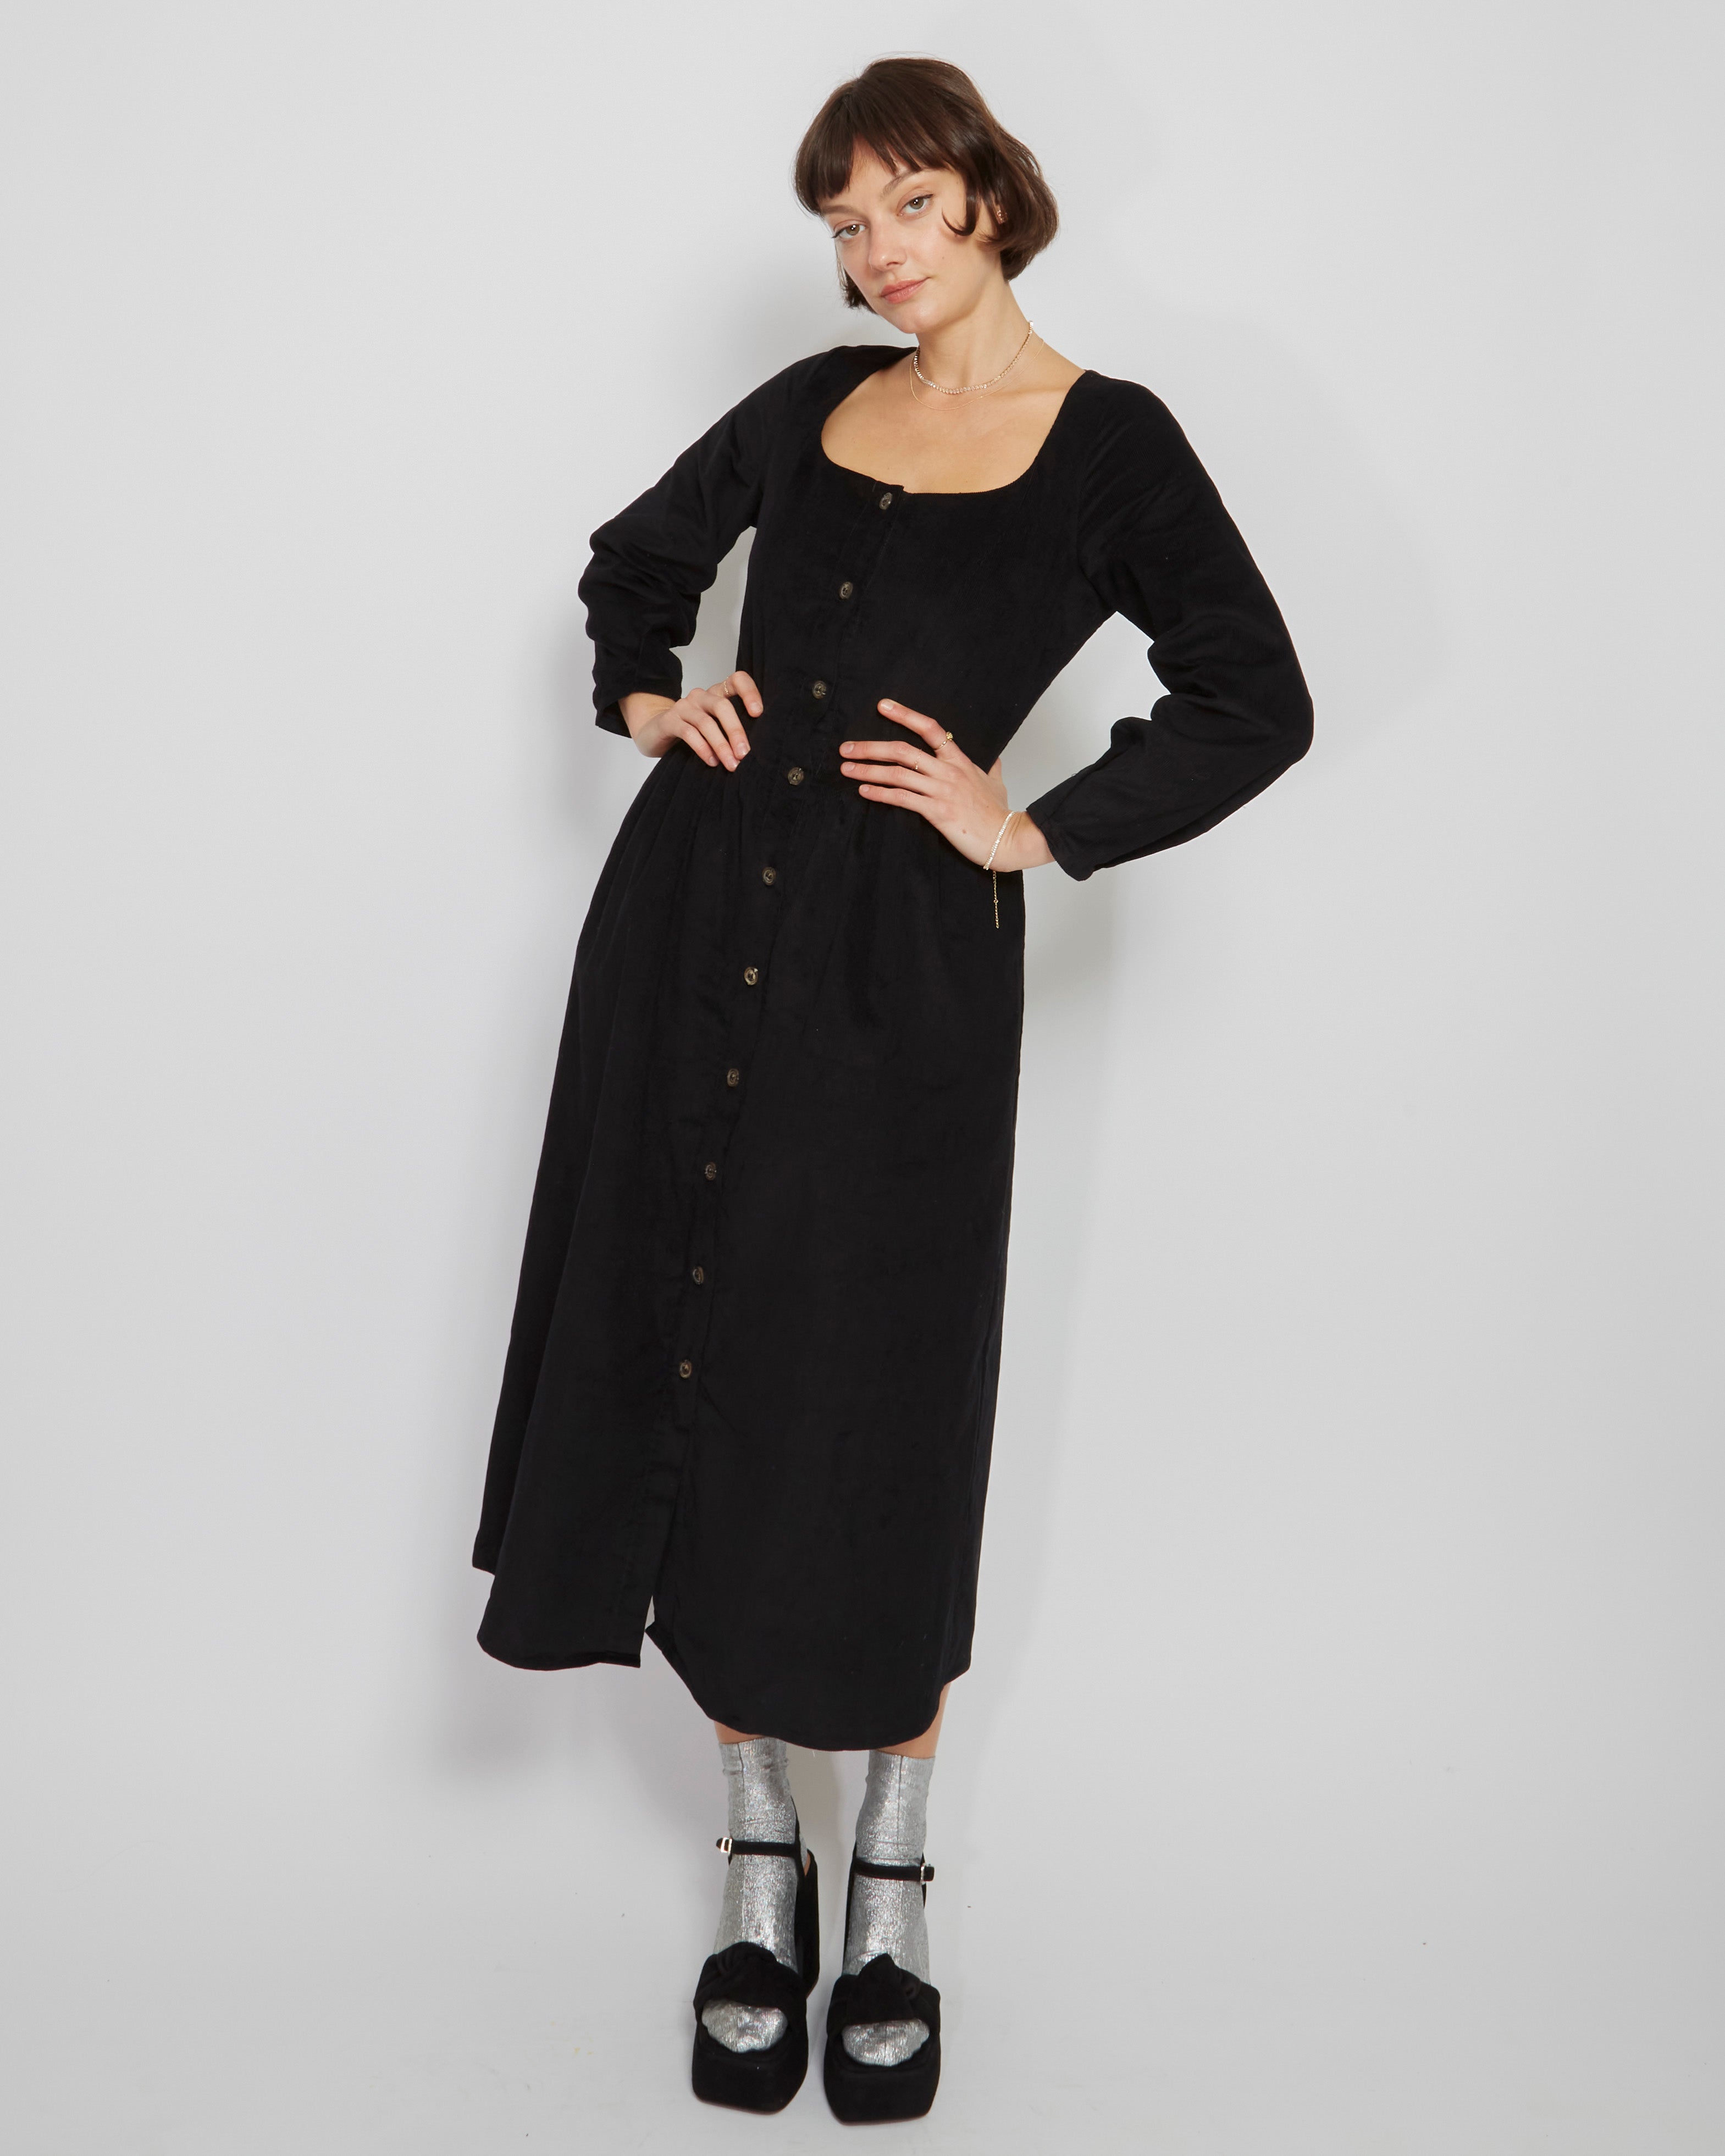 Lantana Pippa Dress – Bayou Blanks